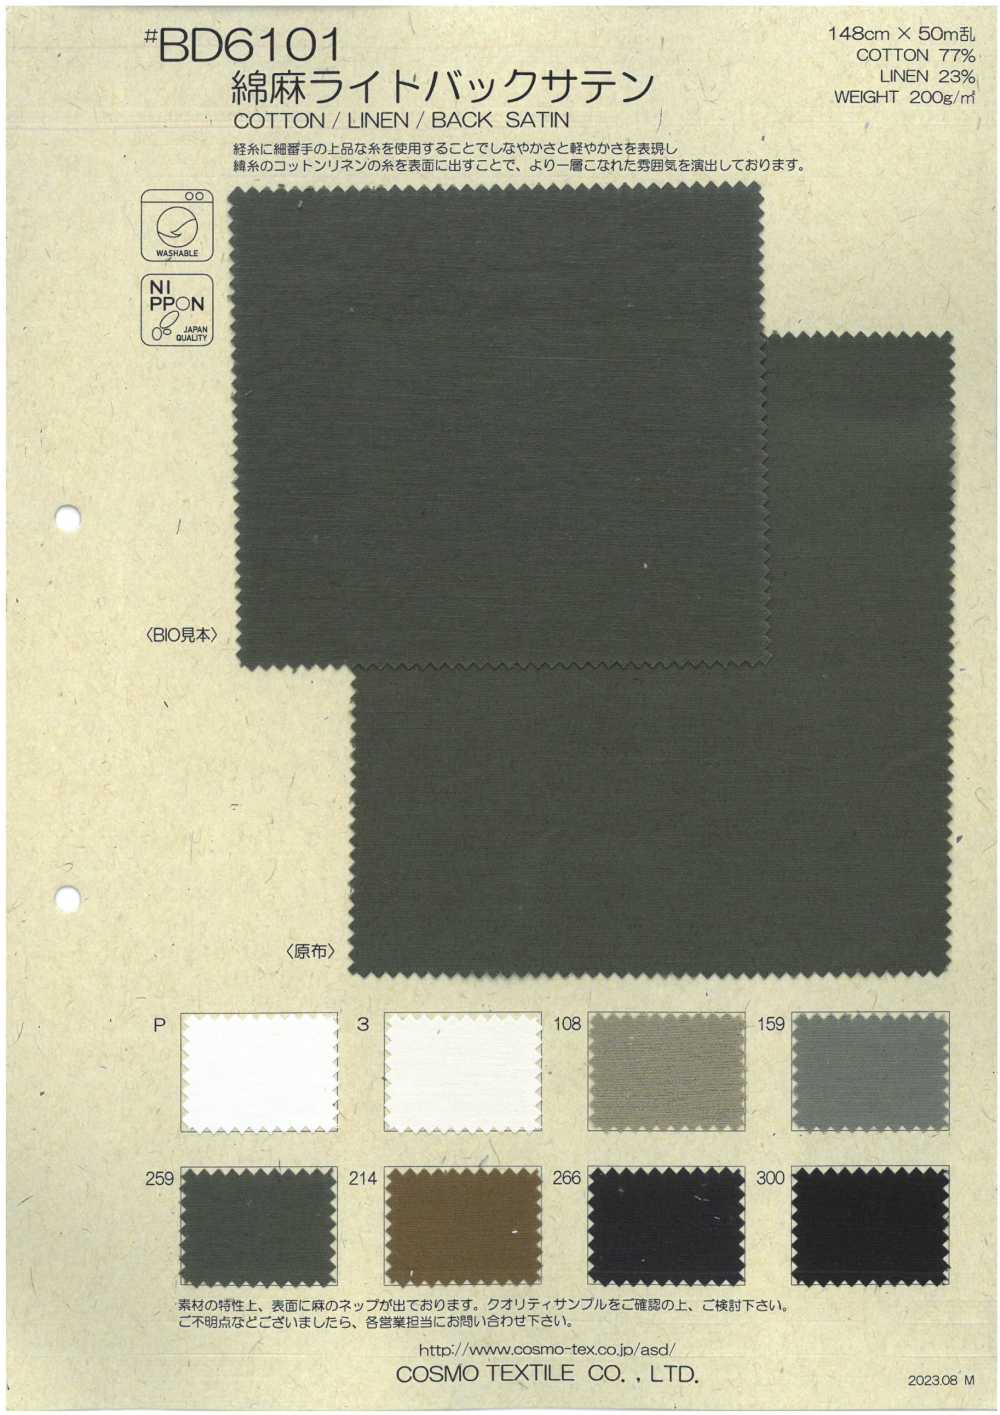 BD6101 Baumwolle Leinen Satin Mit Leichter Rückseite[Textilgewebe] COSMO TEXTILE